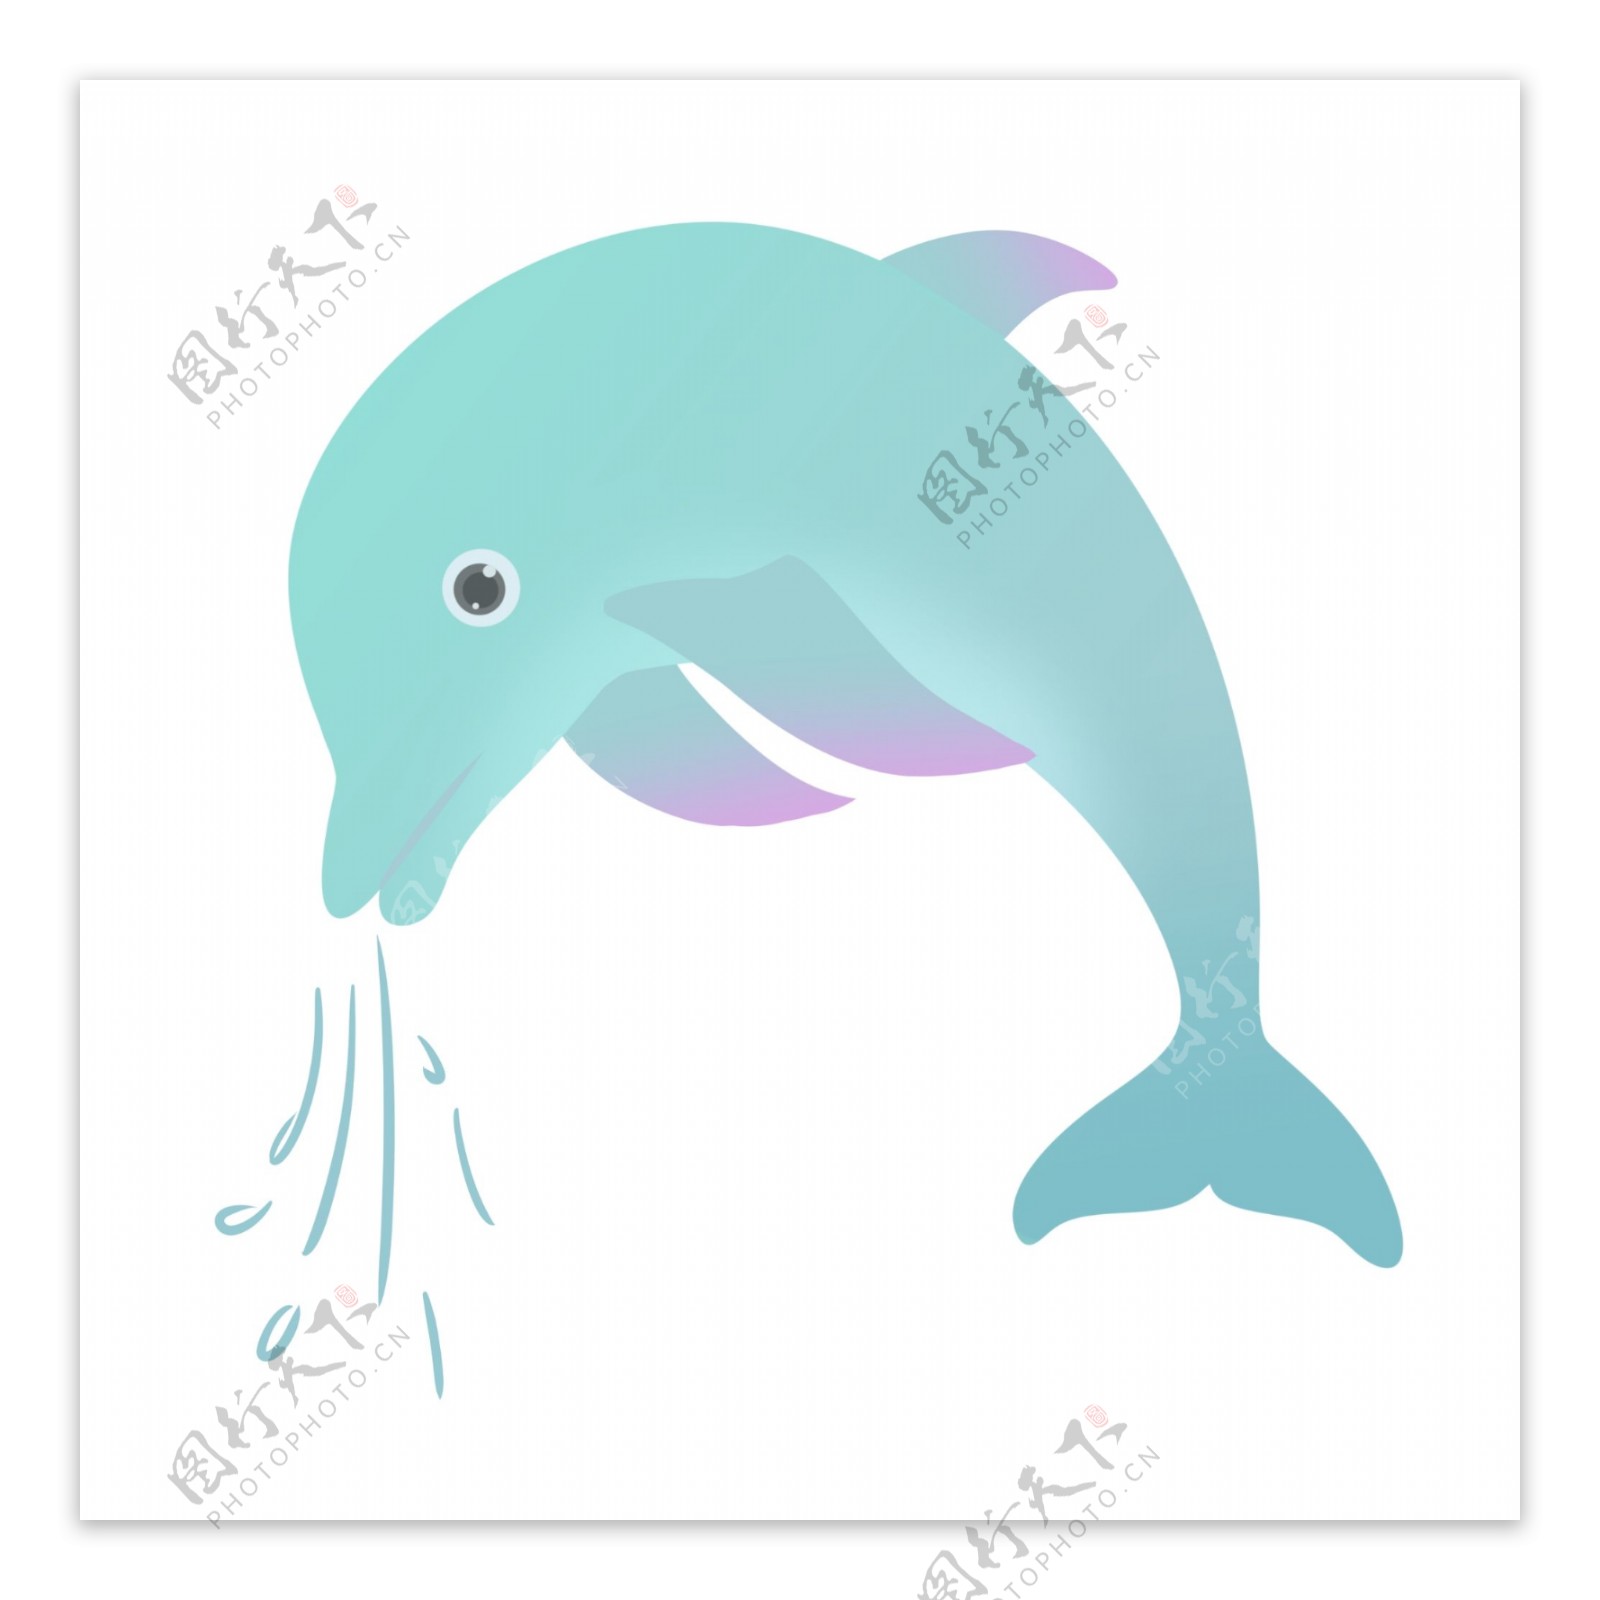 吐泡海豚动物